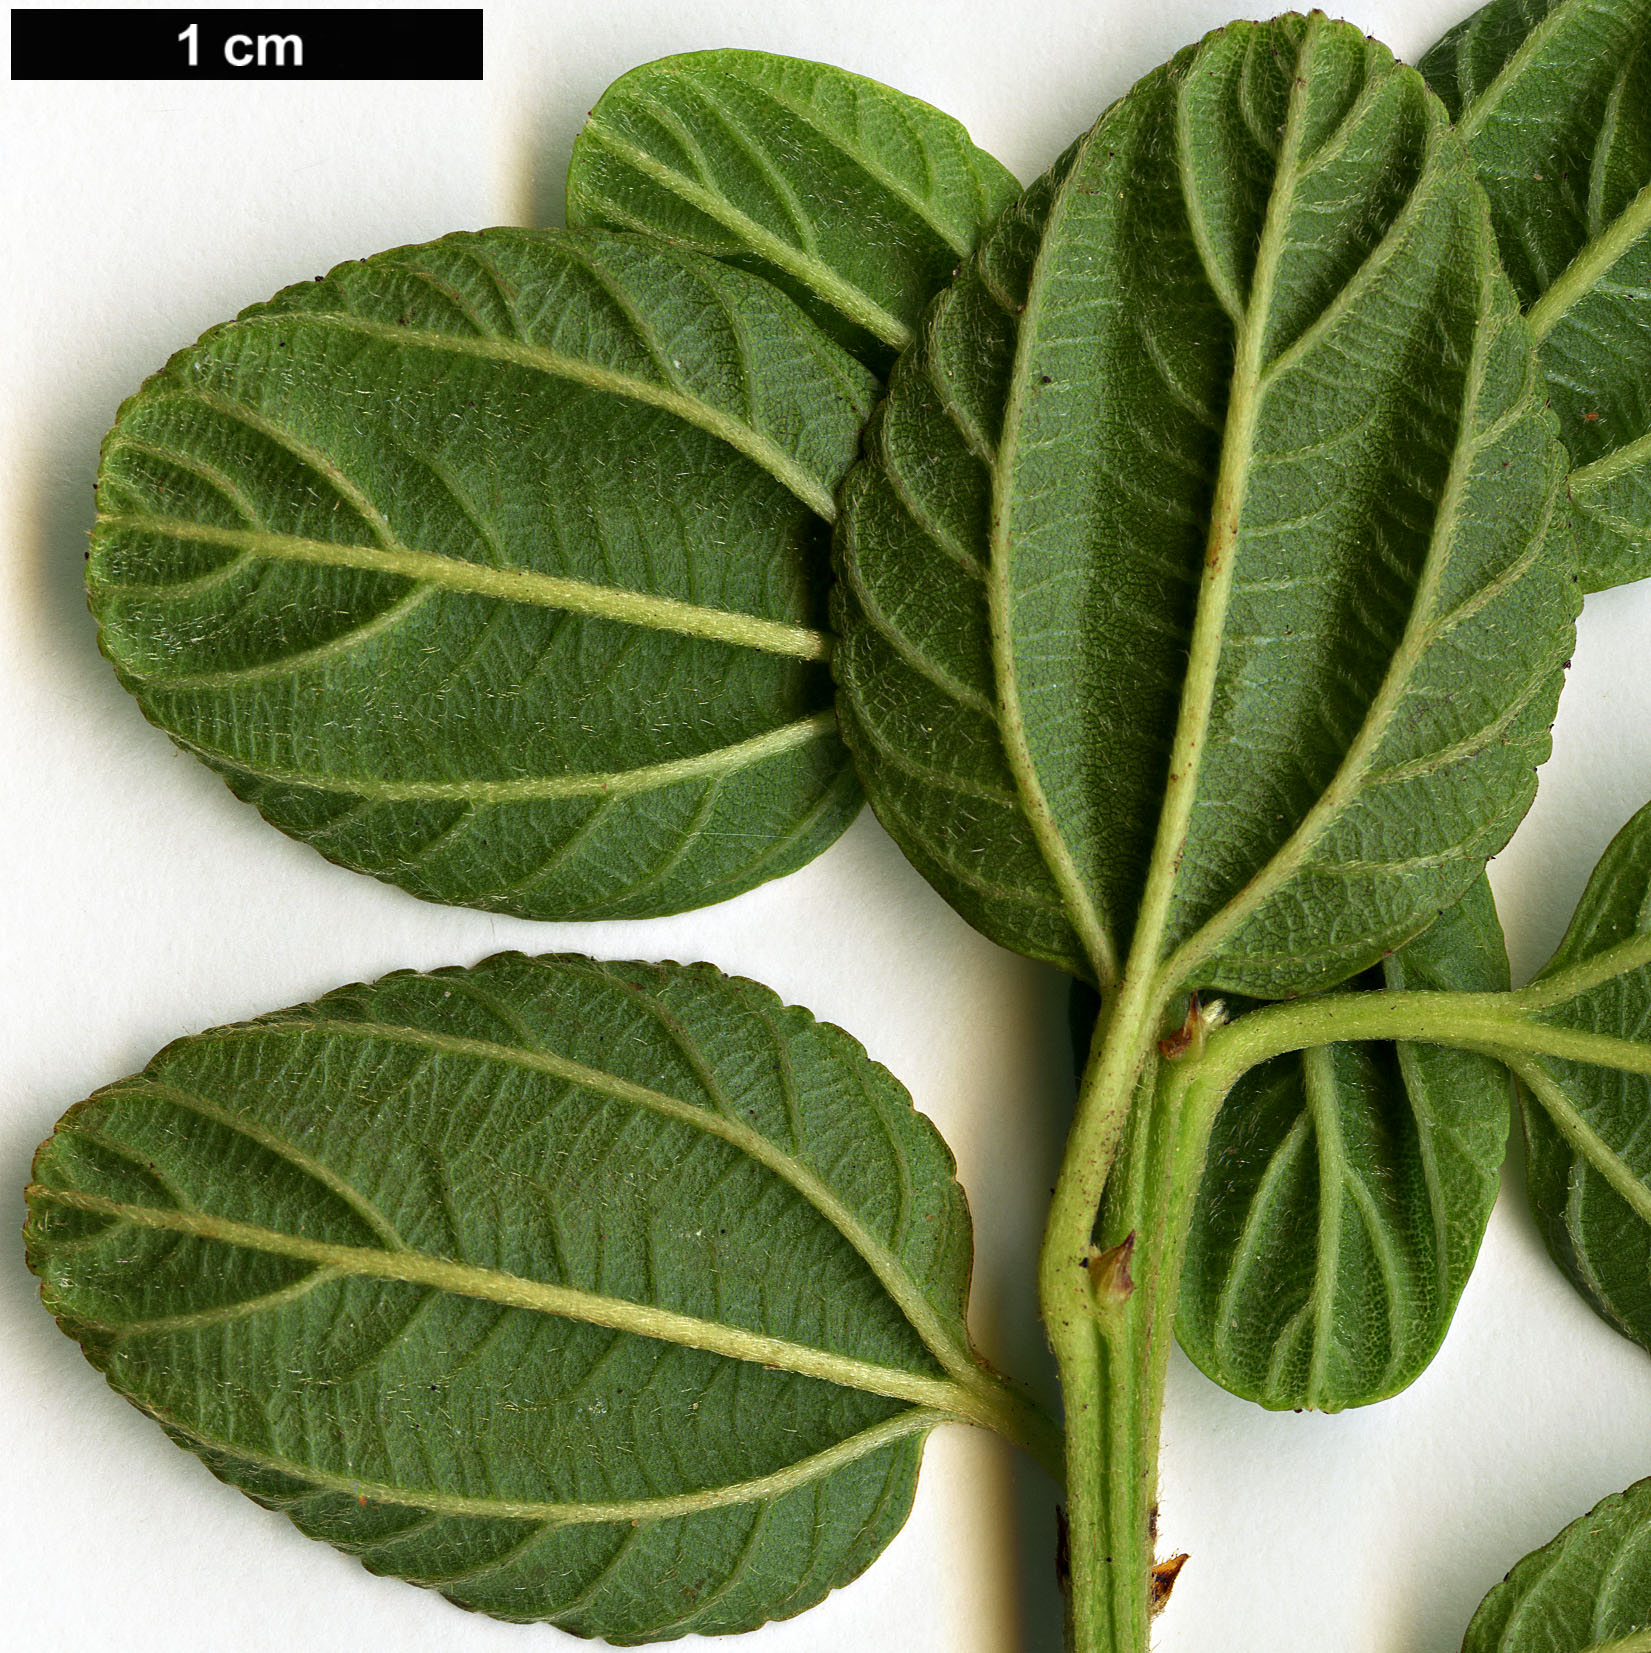 High resolution image: Family: Rhamnaceae - Genus: Ceanothus - Taxon: prostratus